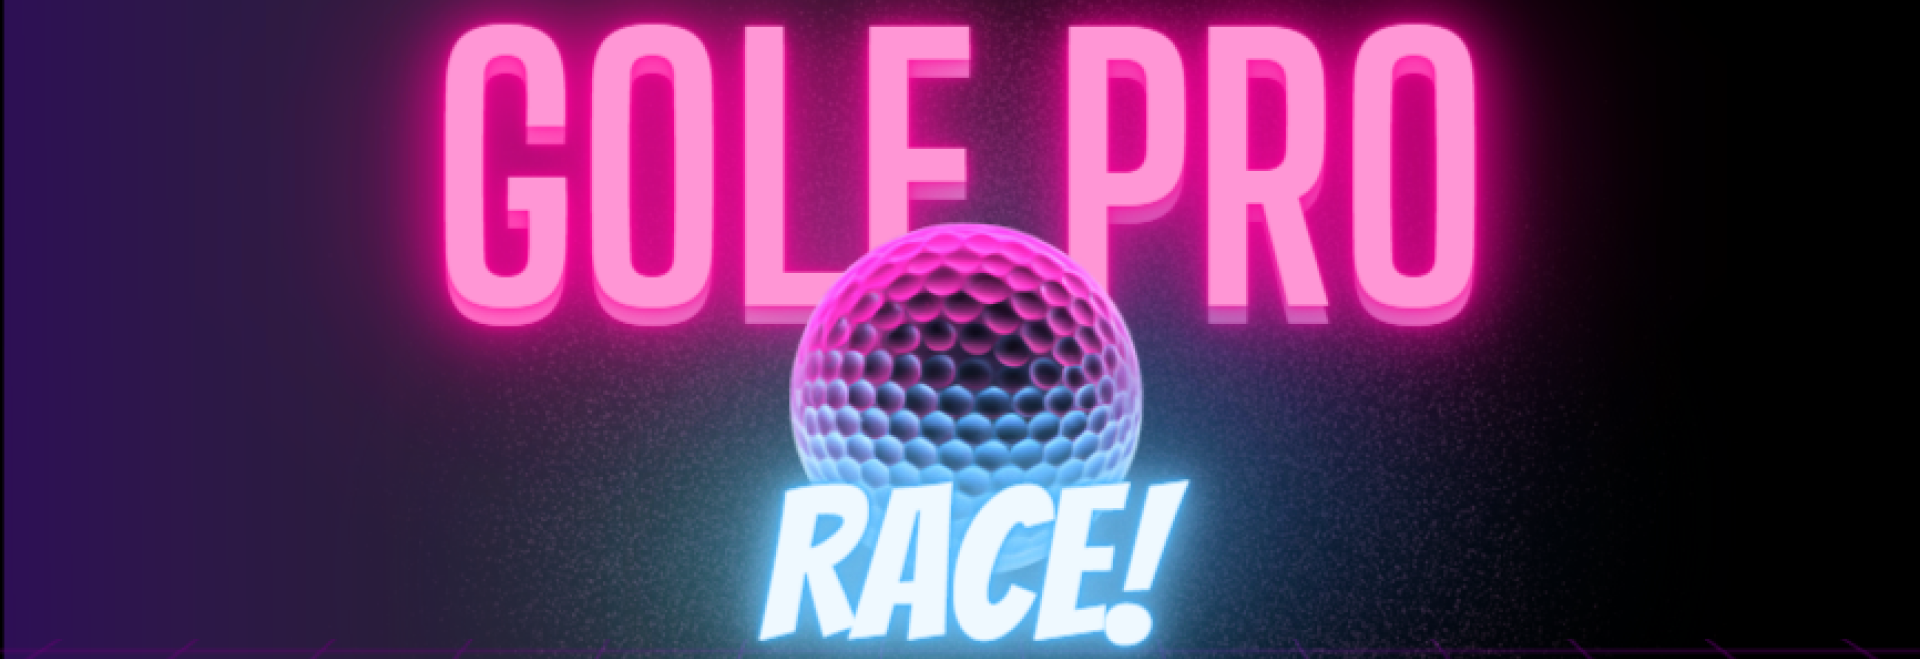 The Golf Pro Race